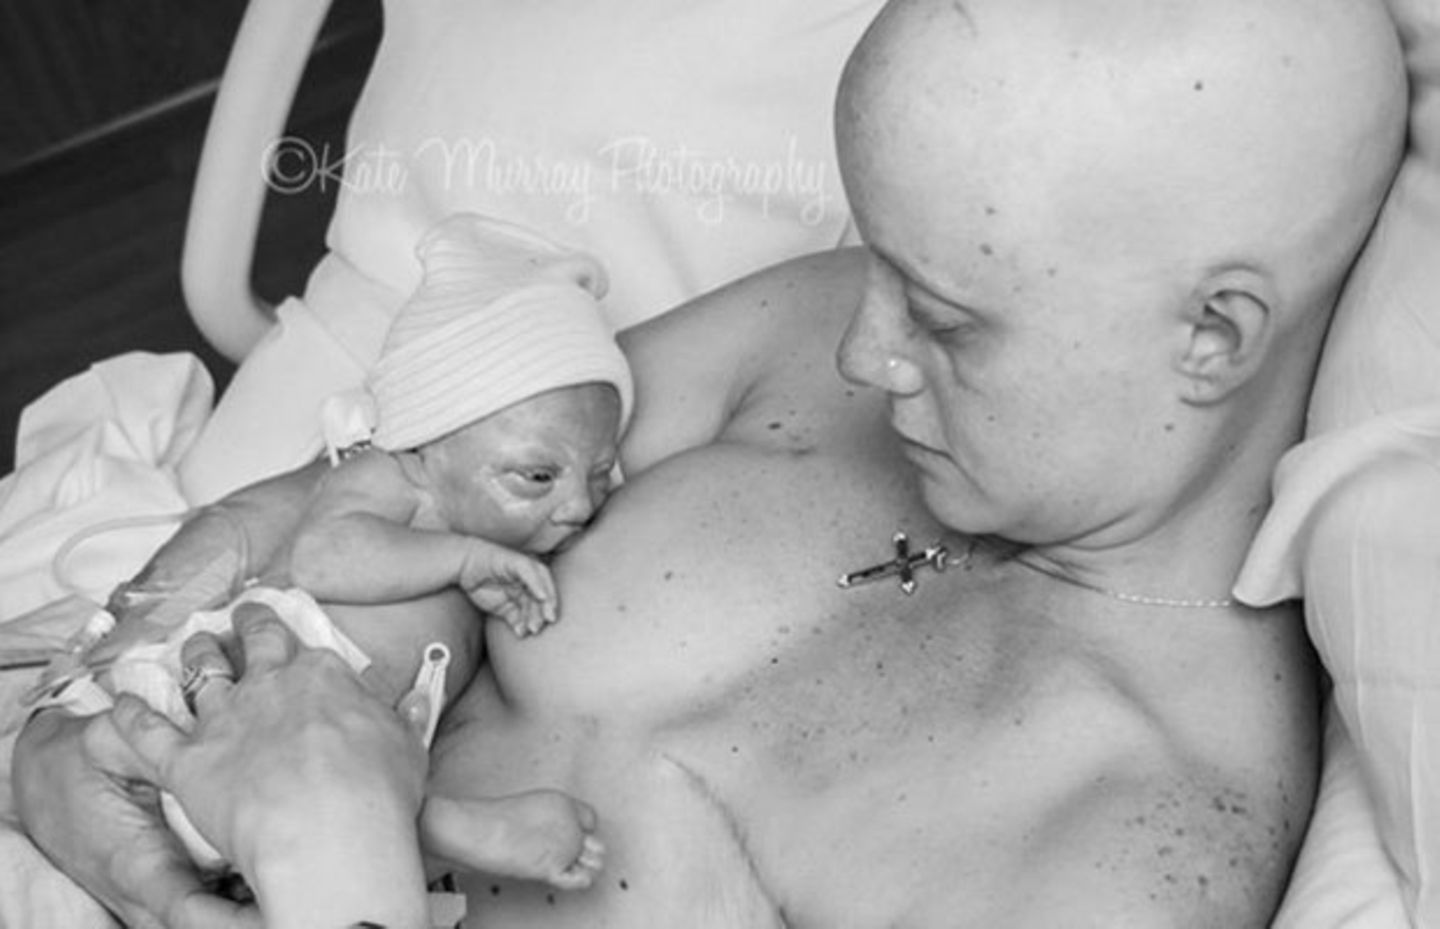 Nach der Krebsdiagnose: Diese Bilder feiern das Leben